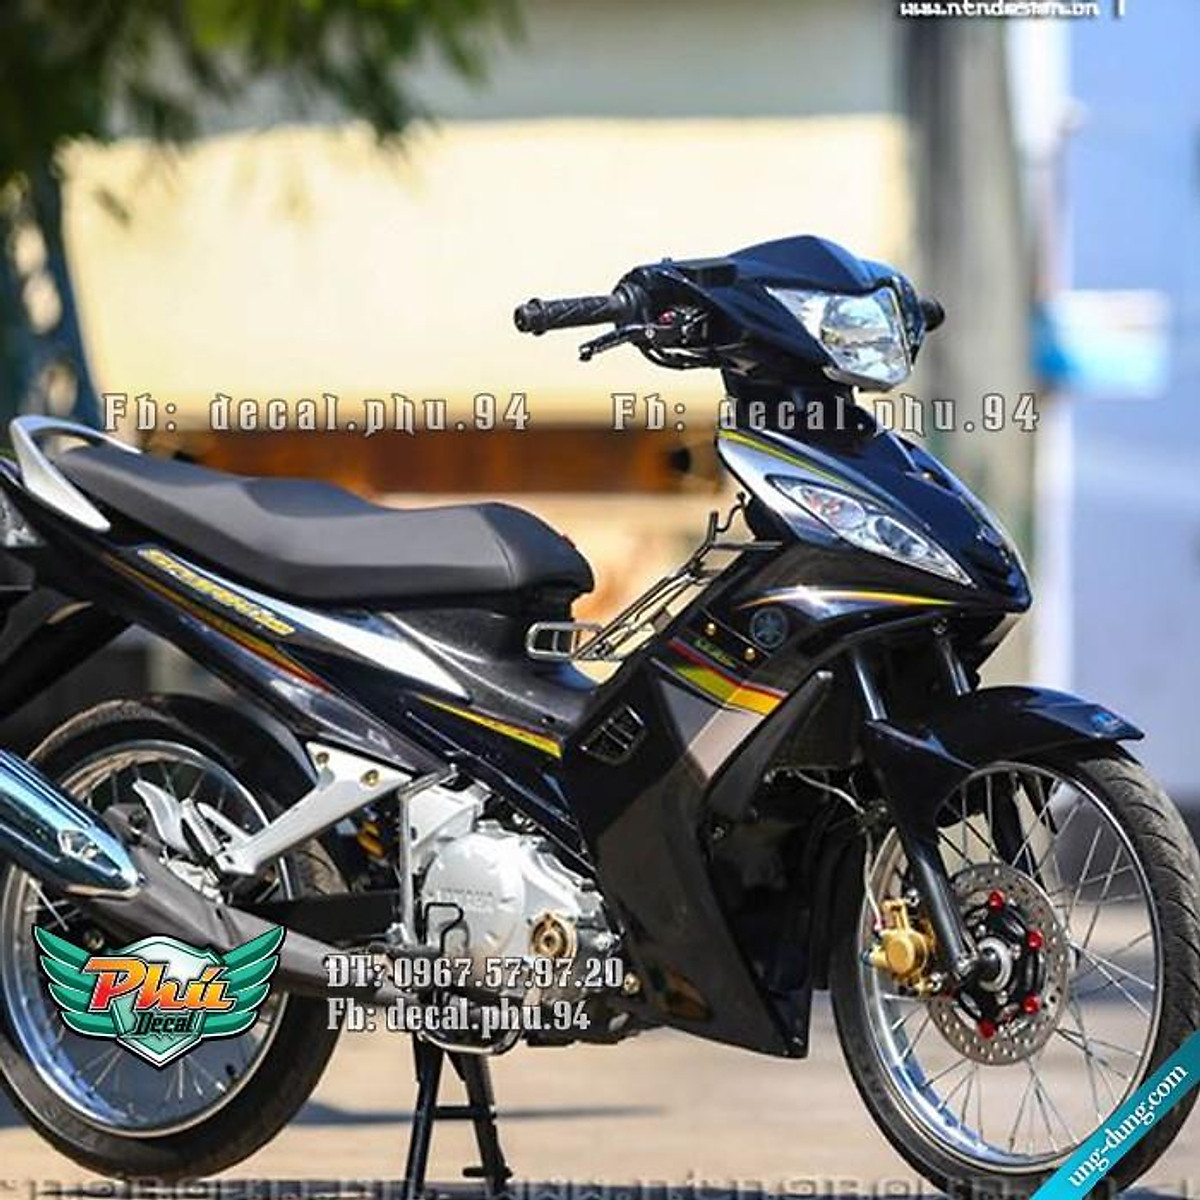 Ngắm Yamaha Exciter 135 độ tuyệt đẹp của dân chơi Cần Thơ  Xe máy  Việt  Giải Trí